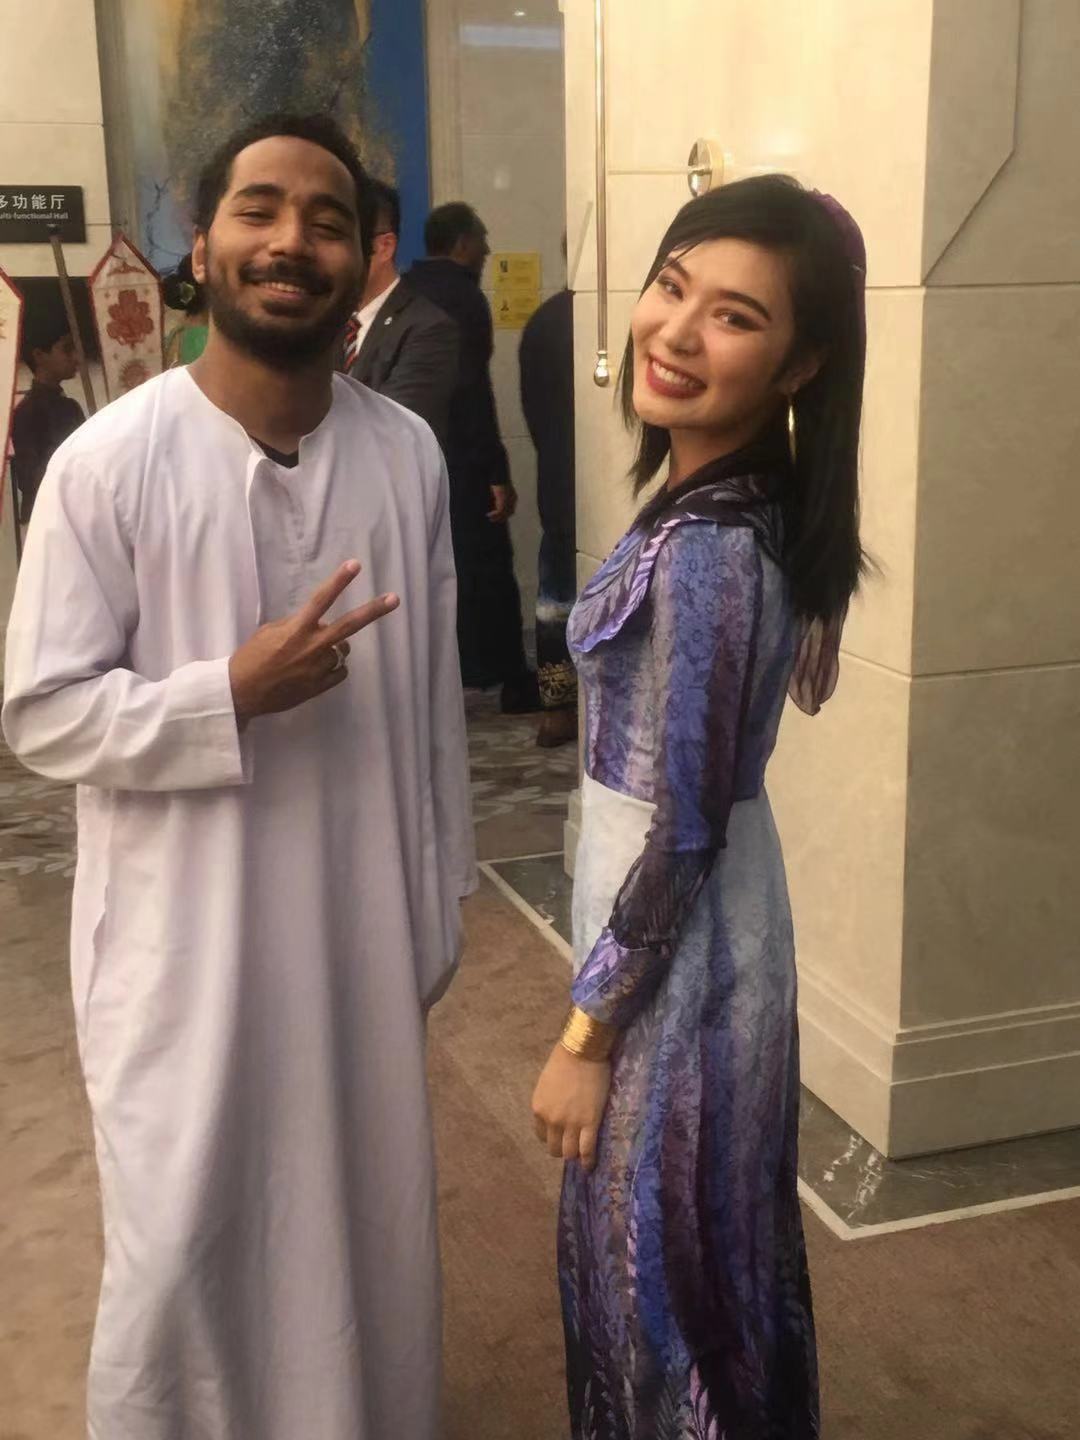 الطالب المصرى مع طالبة صينية